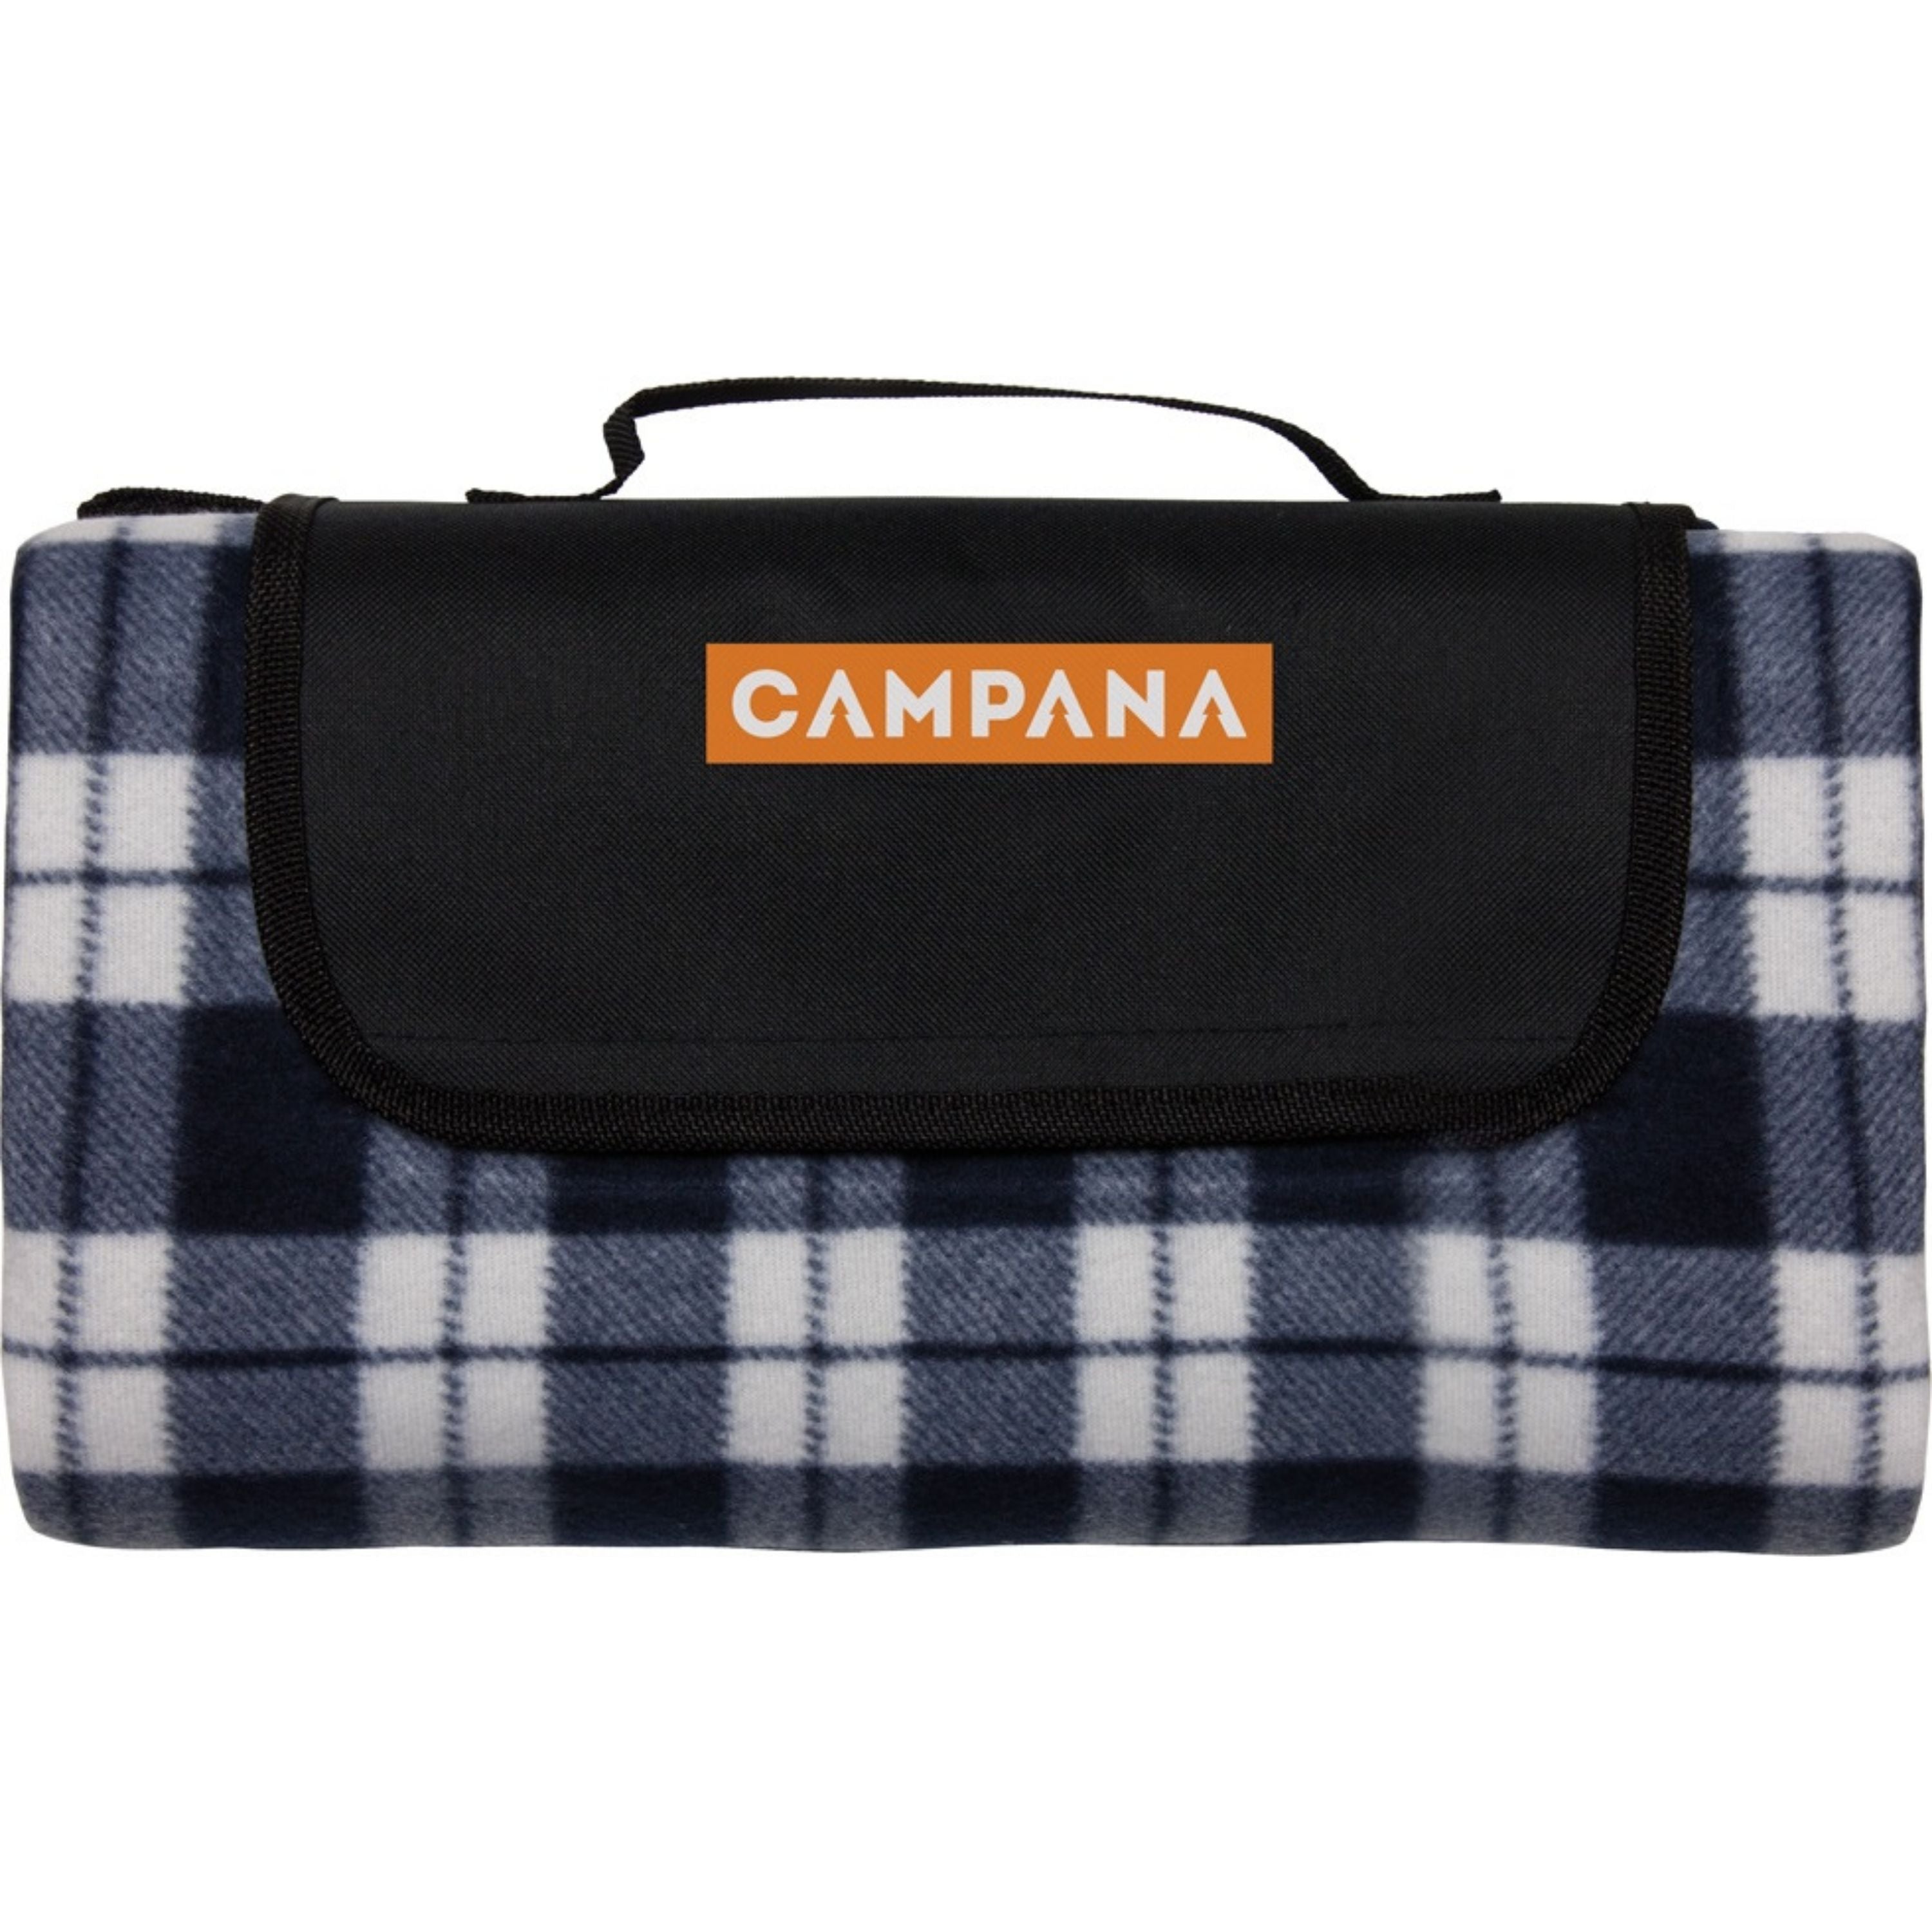 “Campana” picnic blanket